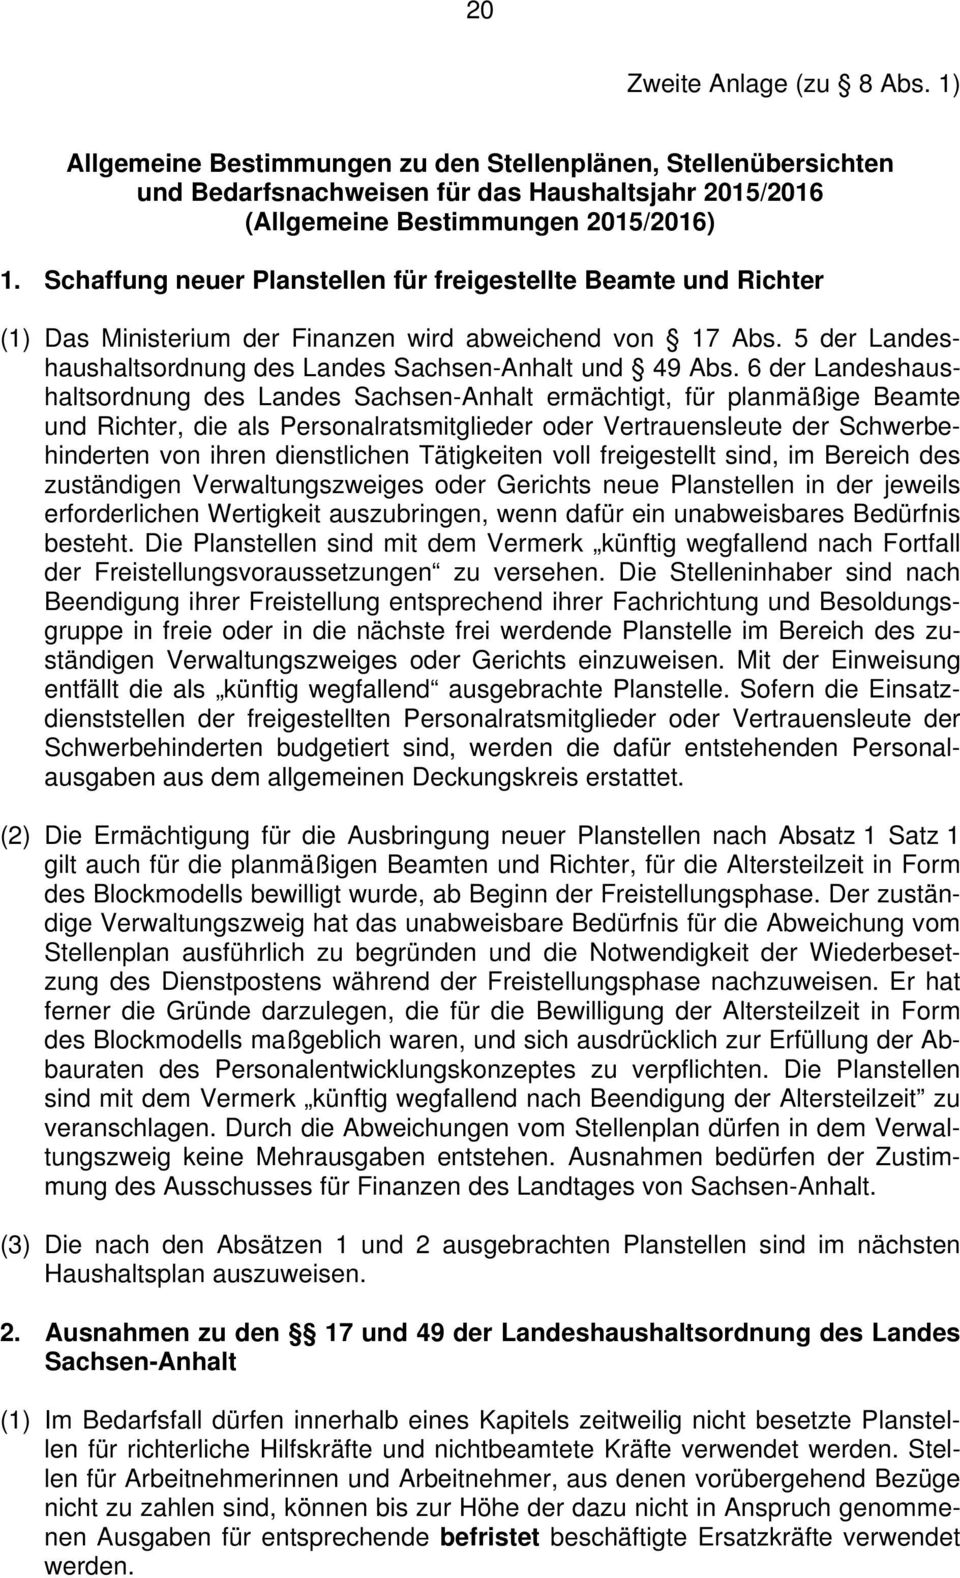 6 der Landeshaushaltsordnung des Landes Sachsen-Anhalt ermächtigt, für planmäßige Beamte und Richter, die als Personalratsmitglieder oder Vertrauensleute der Schwerbehinderten von ihren dienstlichen